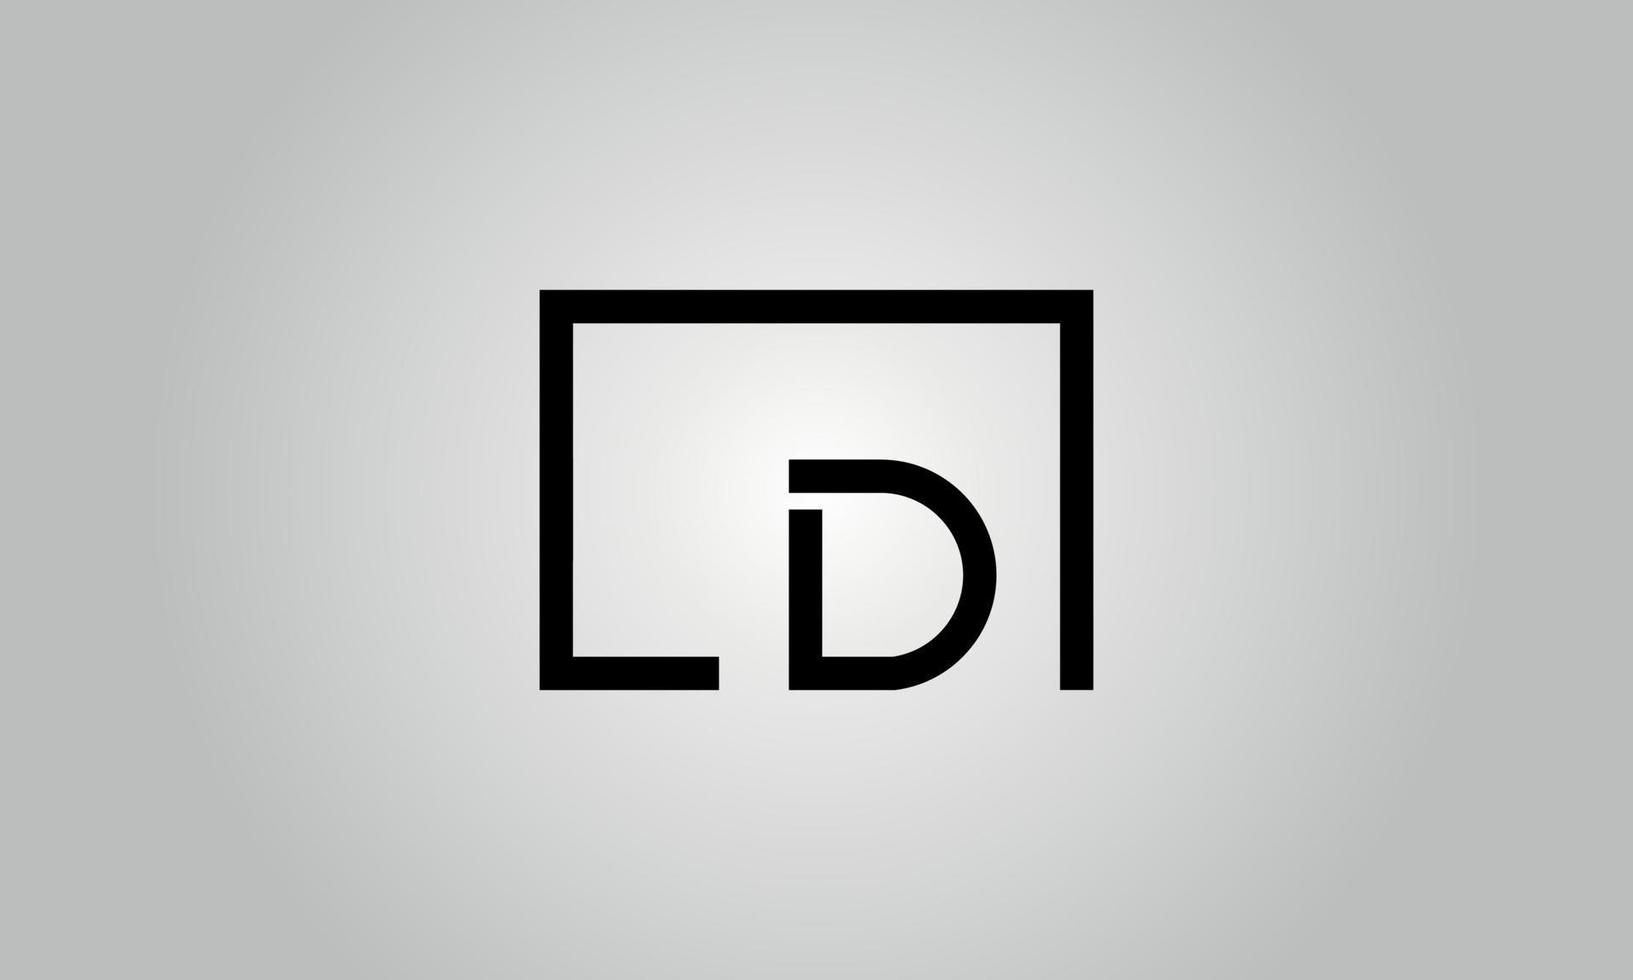 design de logotipo de letra ld. ld logotipo com forma quadrada em cores pretas modelo de vetor livre.